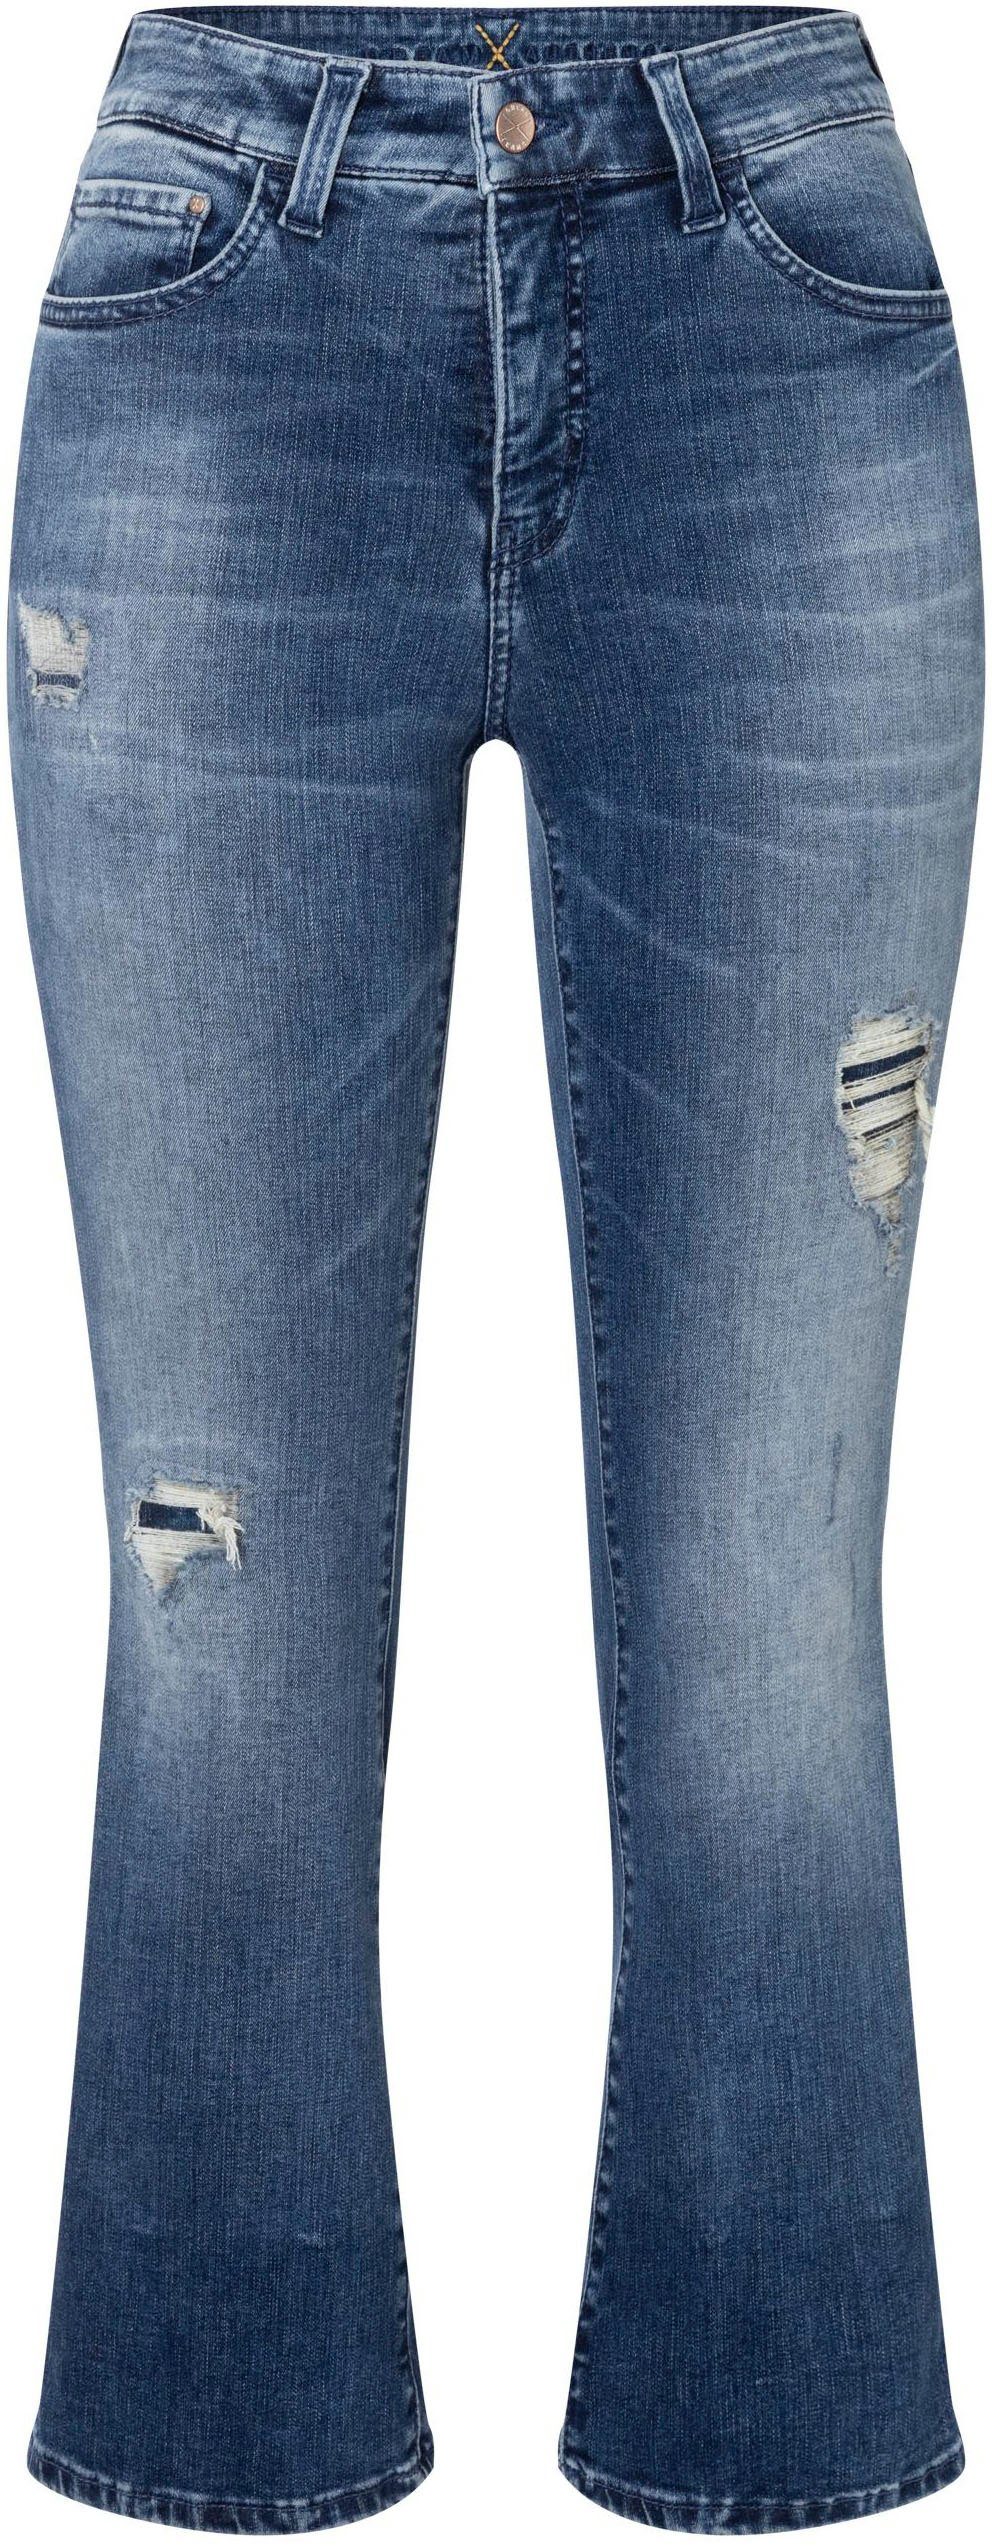 MAC 3/4-Jeans Dream Kick Saum modisch verkürzt und leicht ausgestellt dark blue washed | Stretchjeans